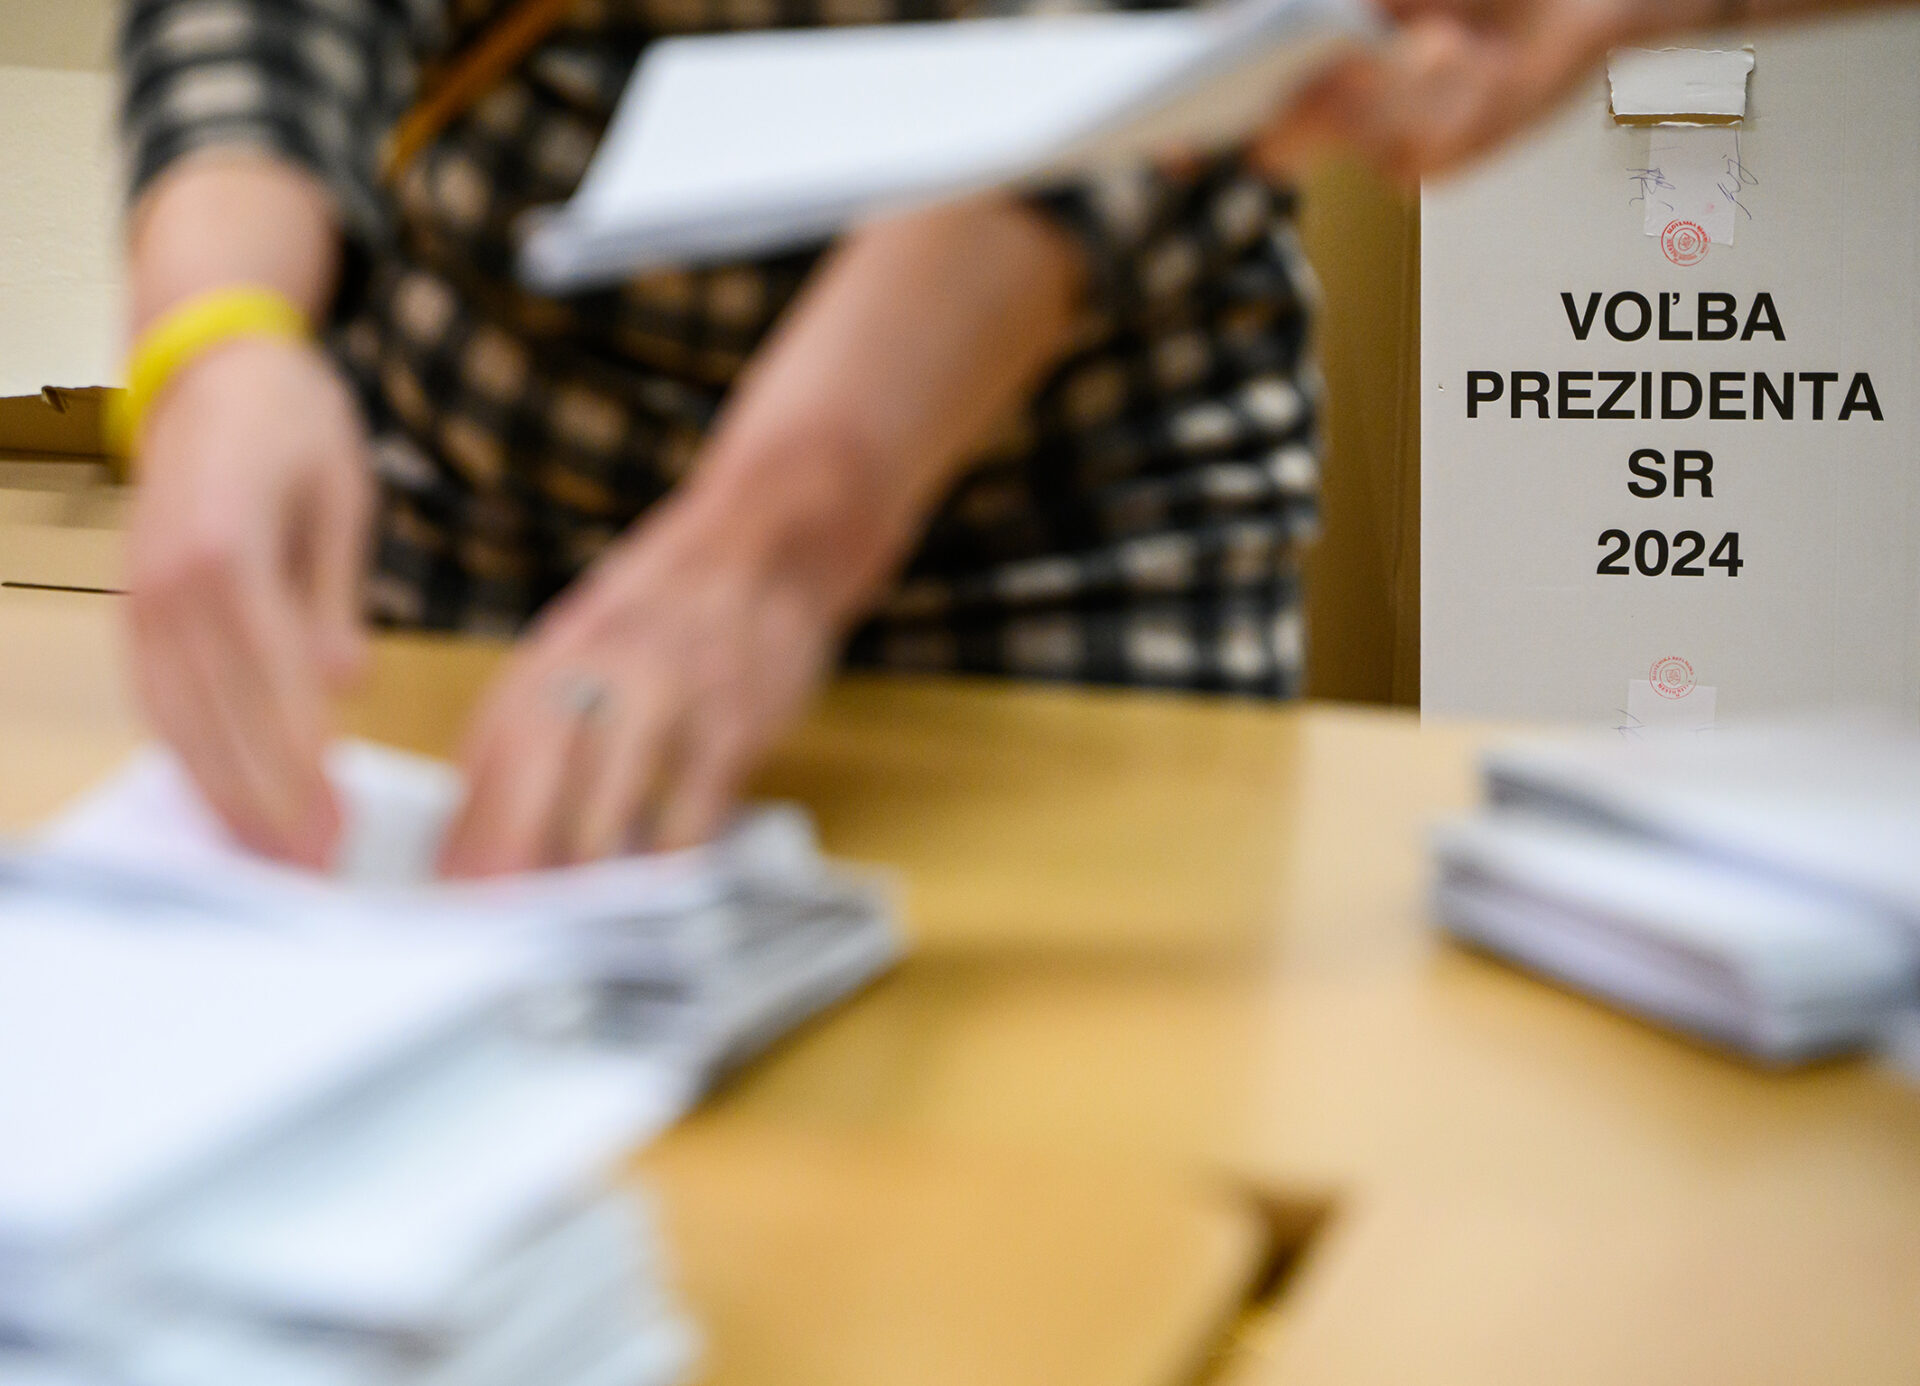 PREHĽAD: Kde v Košiciach môžete voliť počas prezidentských volieb? Zoznam volebných miestností